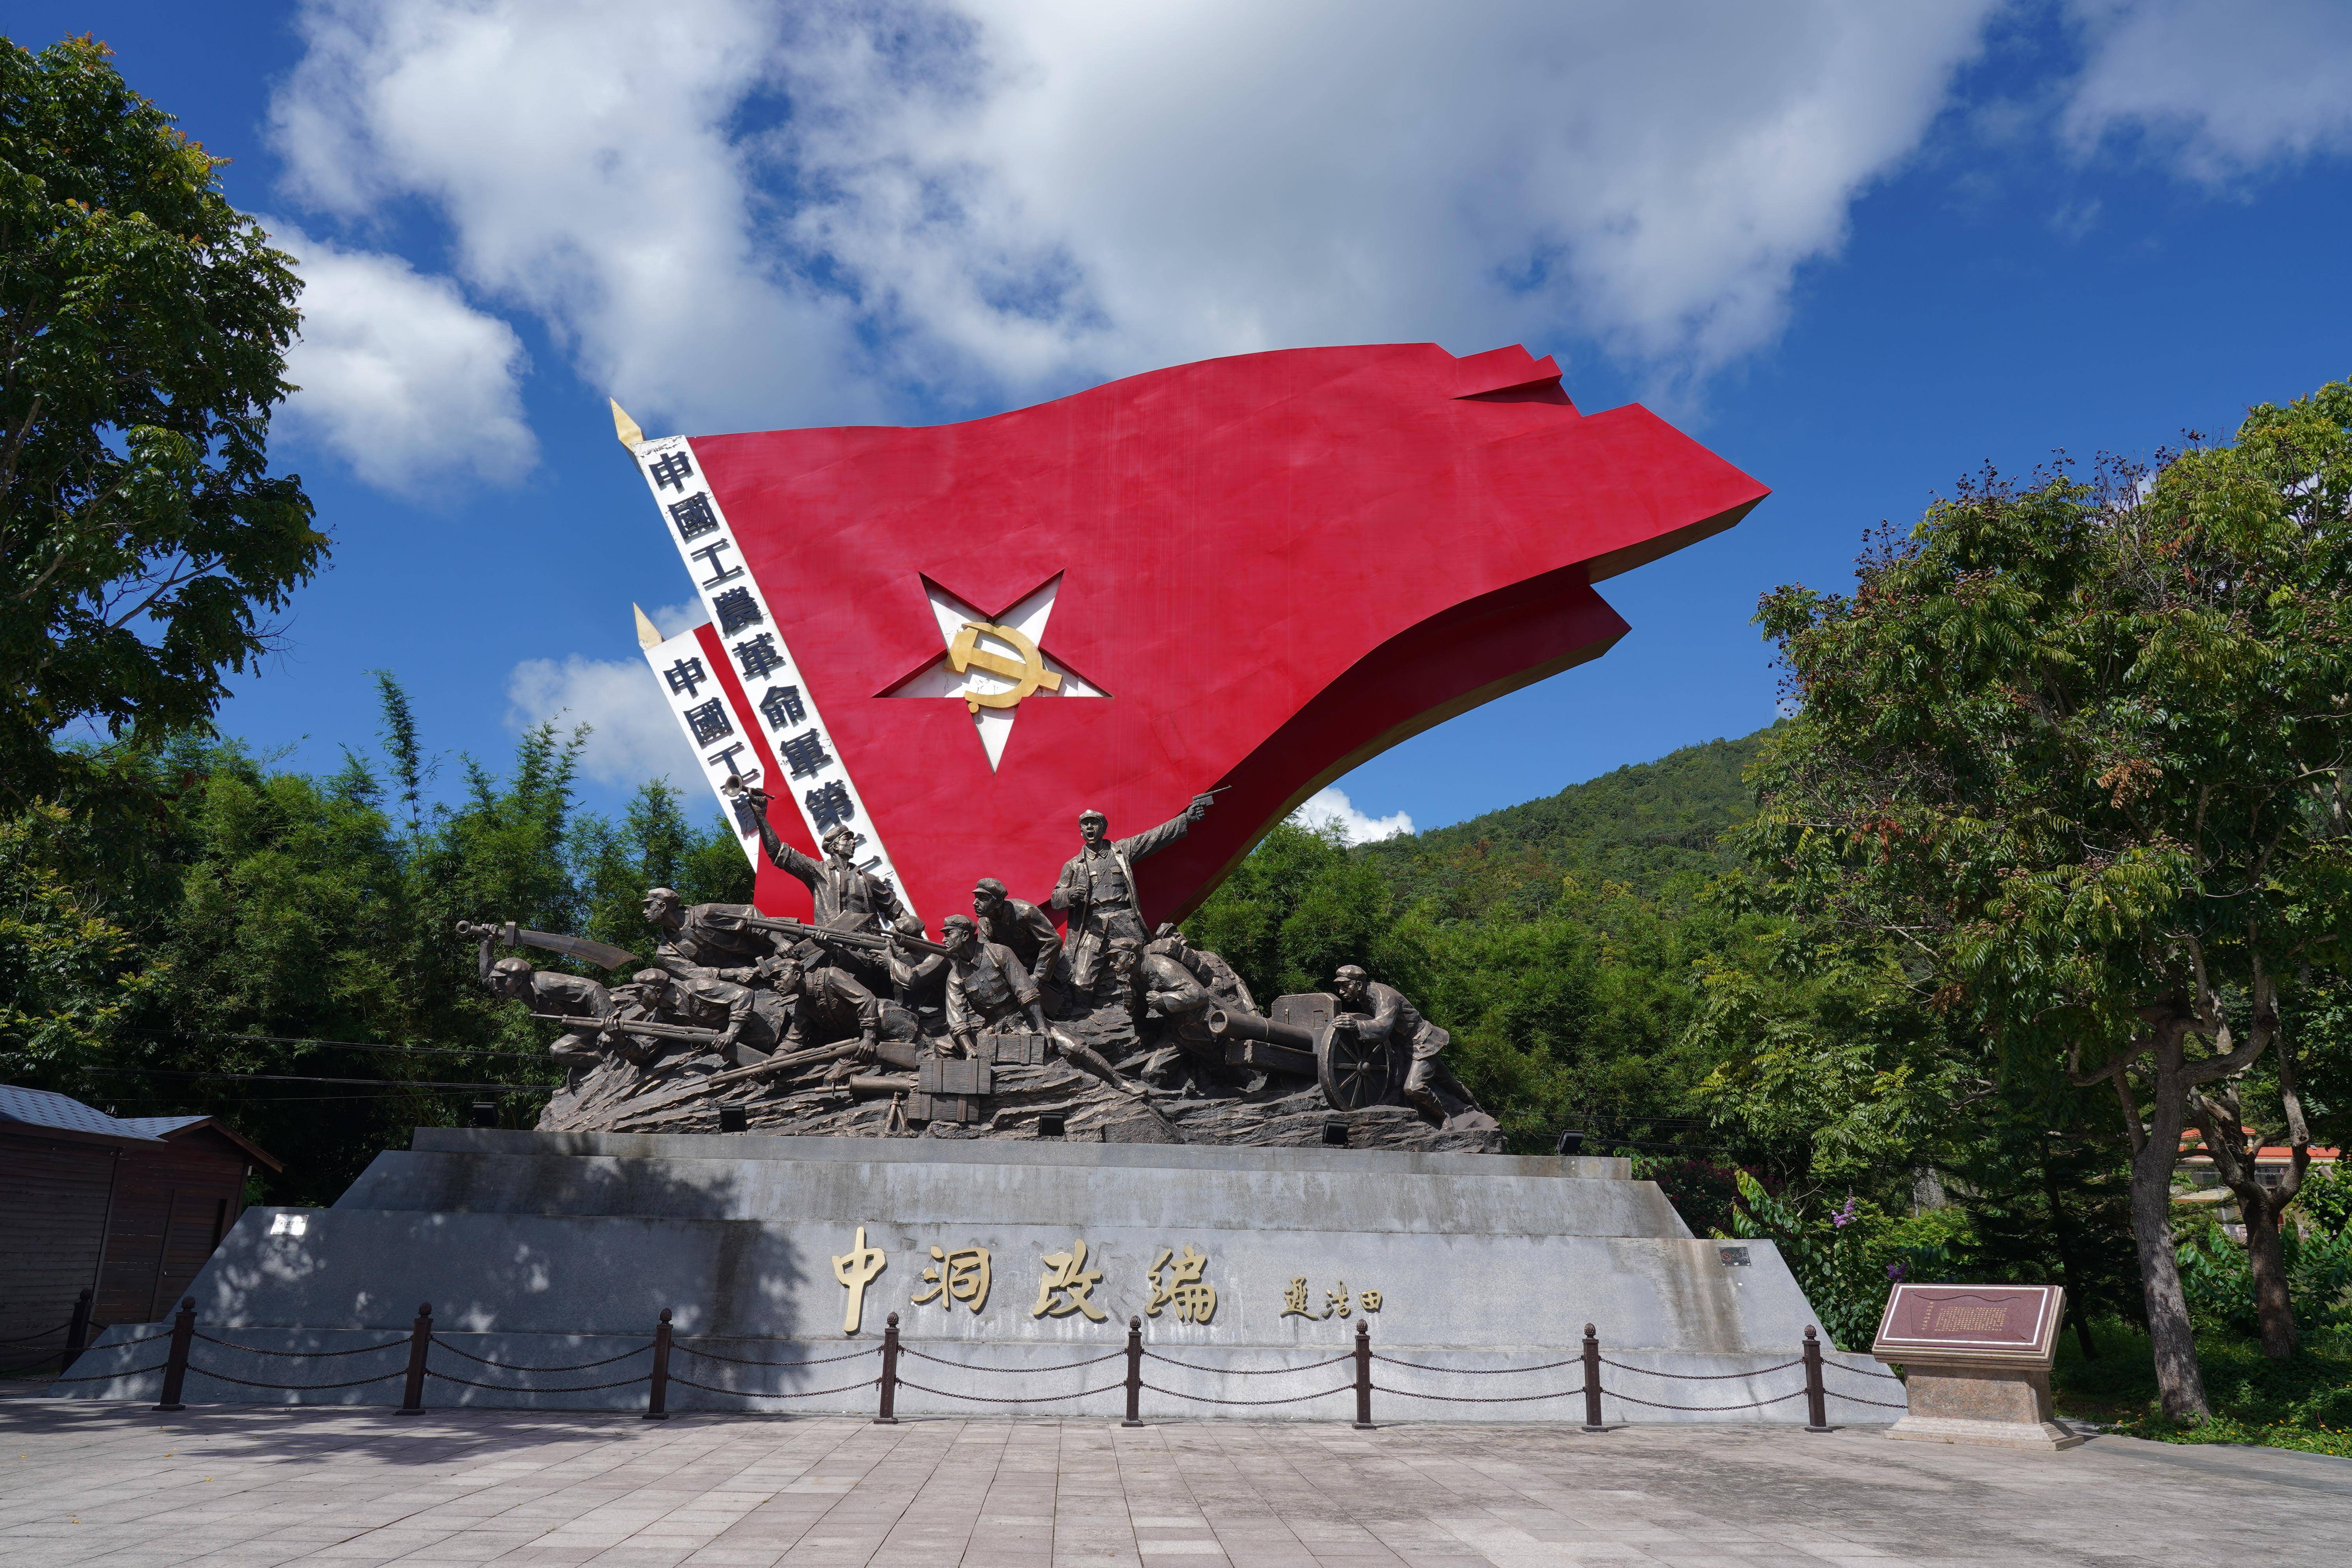 中国最早的区级苏维埃政府诞生地之一,留下了众多的红色遗迹,革命旧址